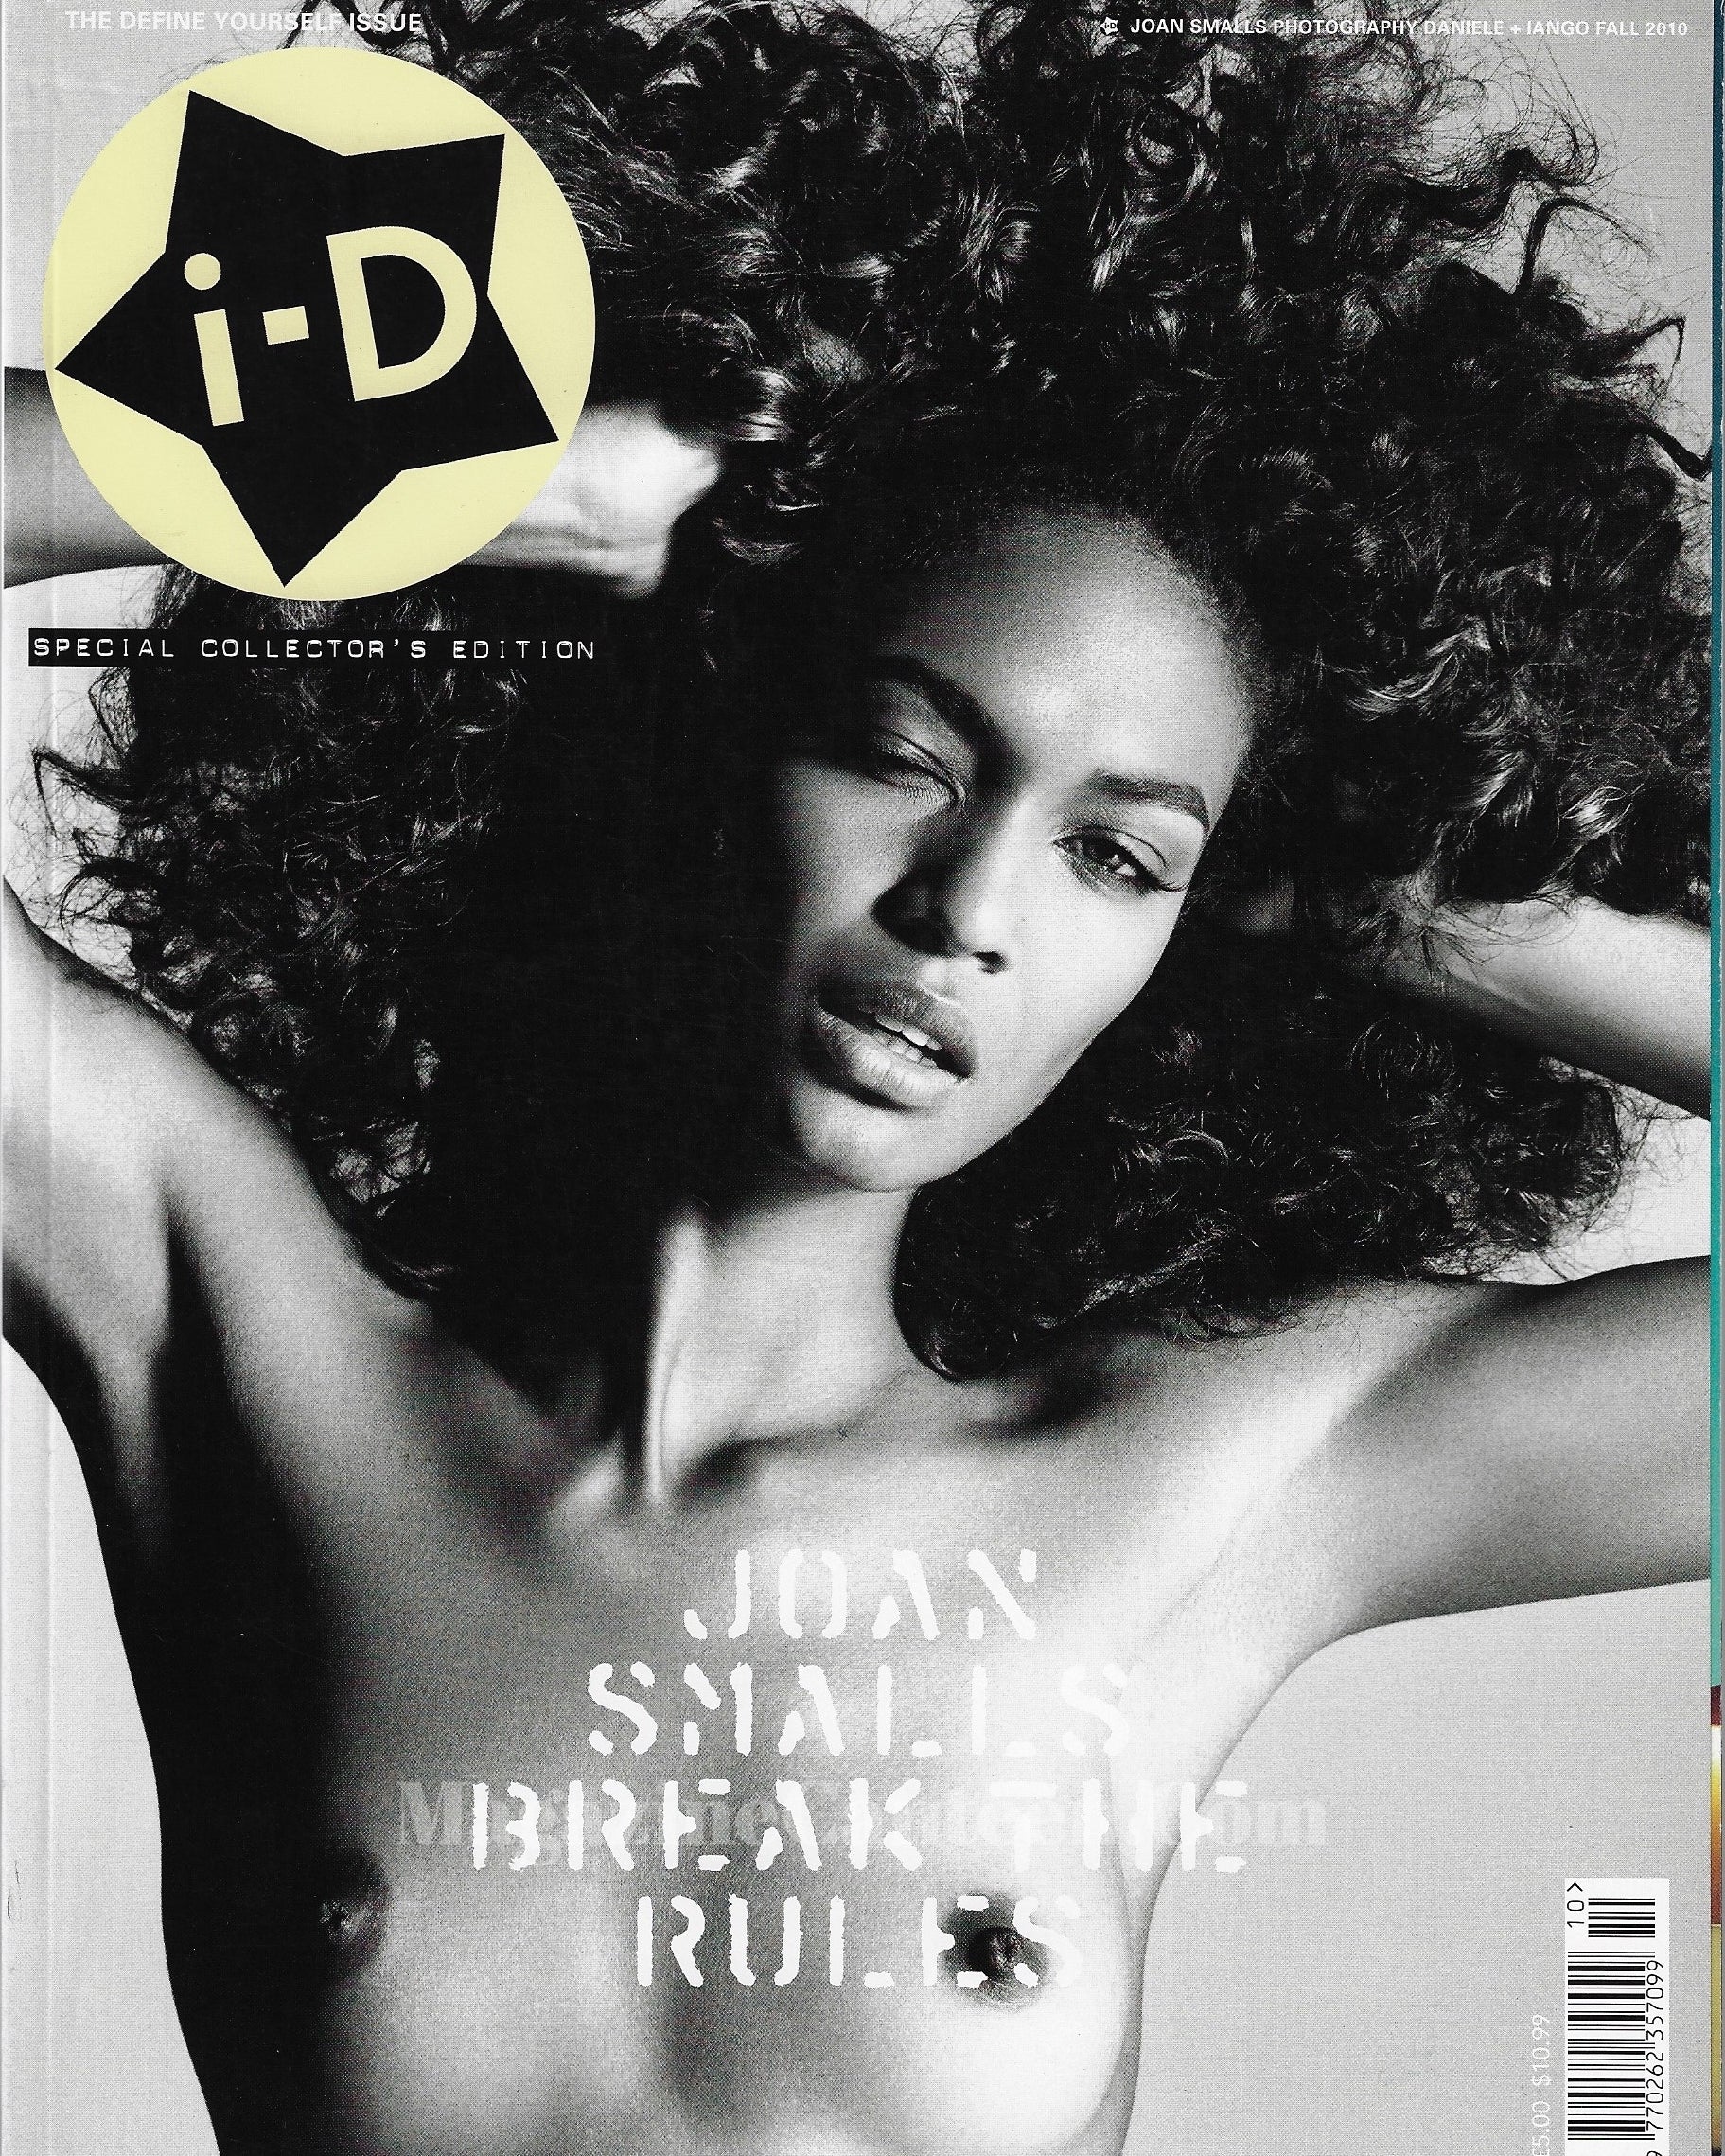 I-D Magazine 309 - Joan Smalls 2010